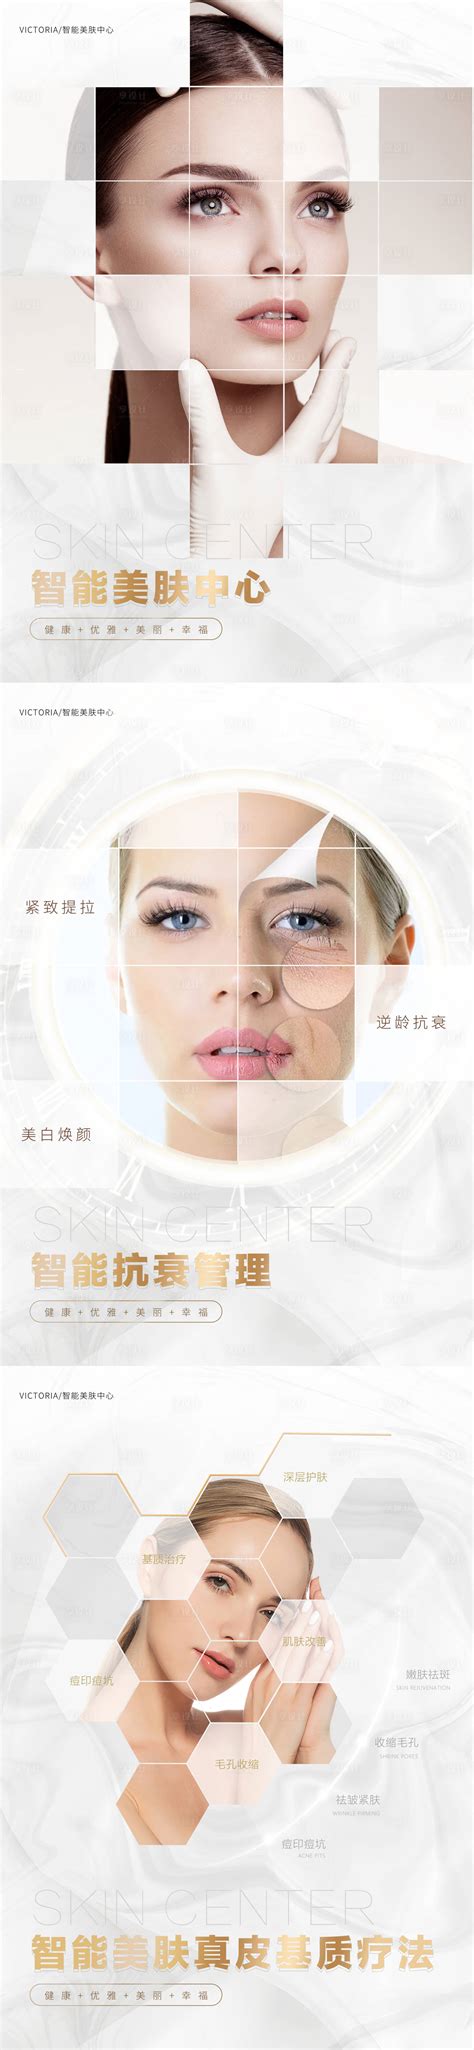 医美皮肤管理海报系列PSD广告设计素材海报模板免费下载-享设计